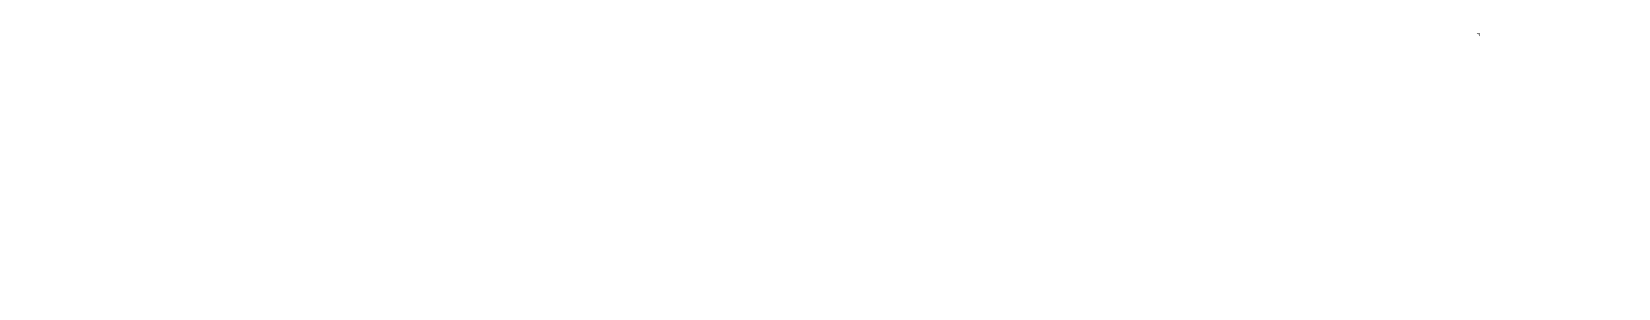 logo_rt07